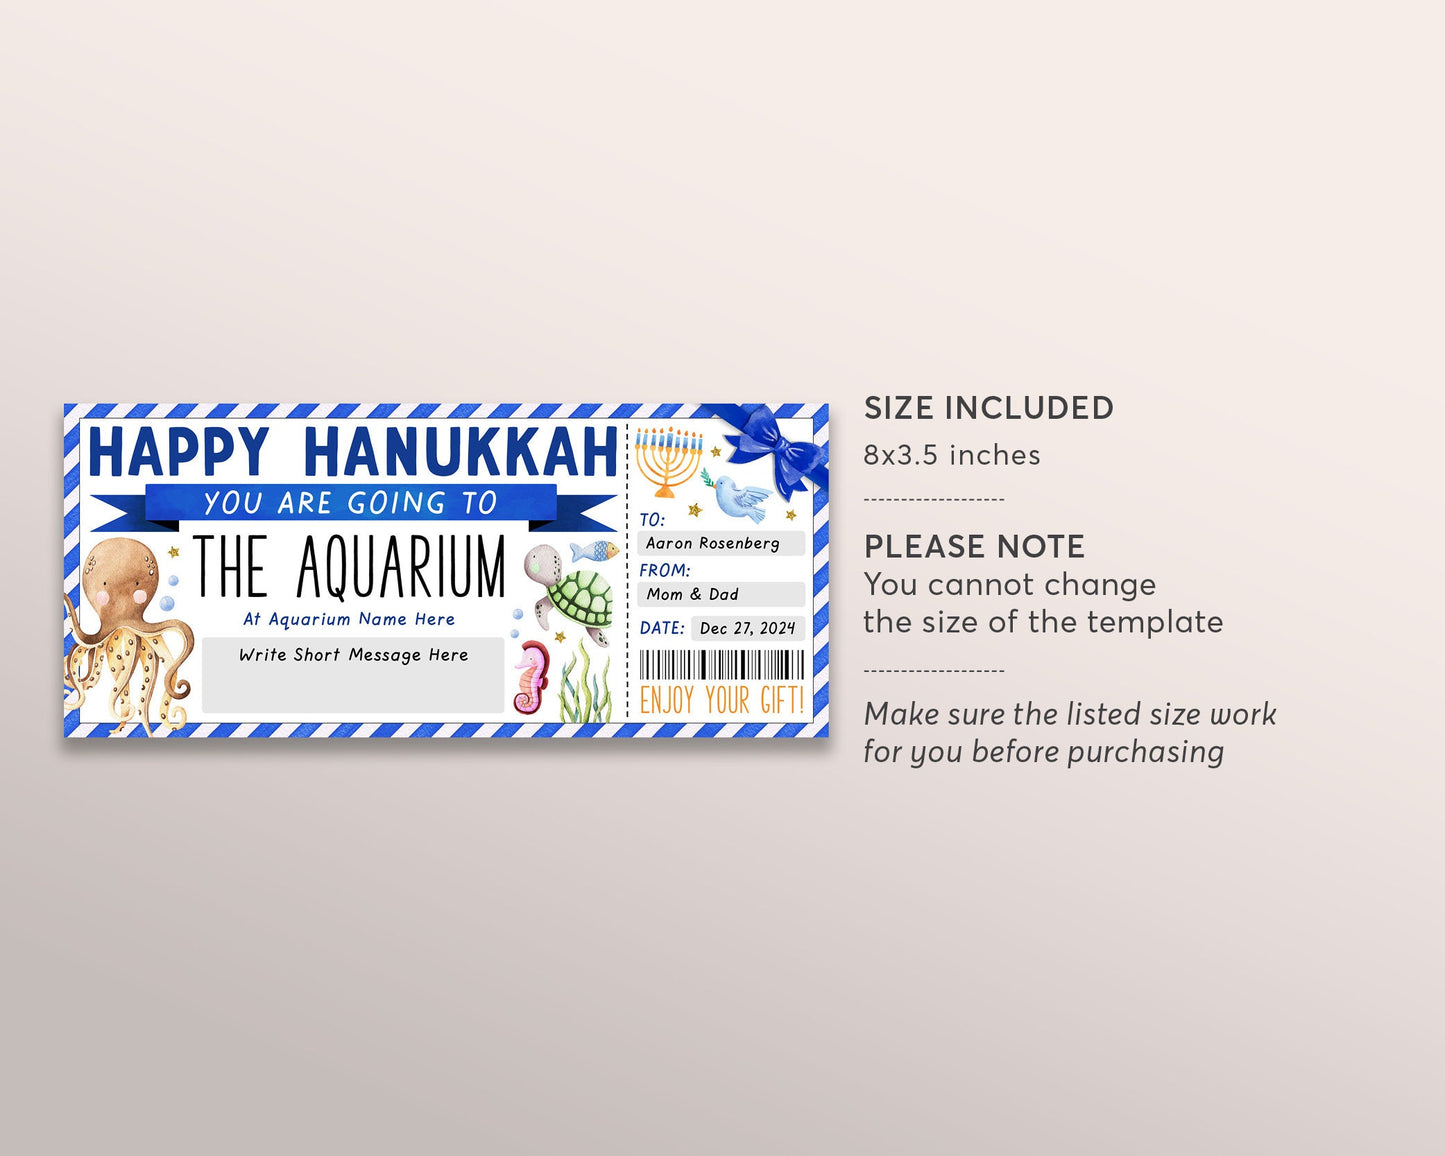 Hanukkah Aquarium Trip Ticket Editable Template, Surprise Chanukah Aquarium Visit Gift Voucher For Kids, Day Trip Gift Certificate Coupon